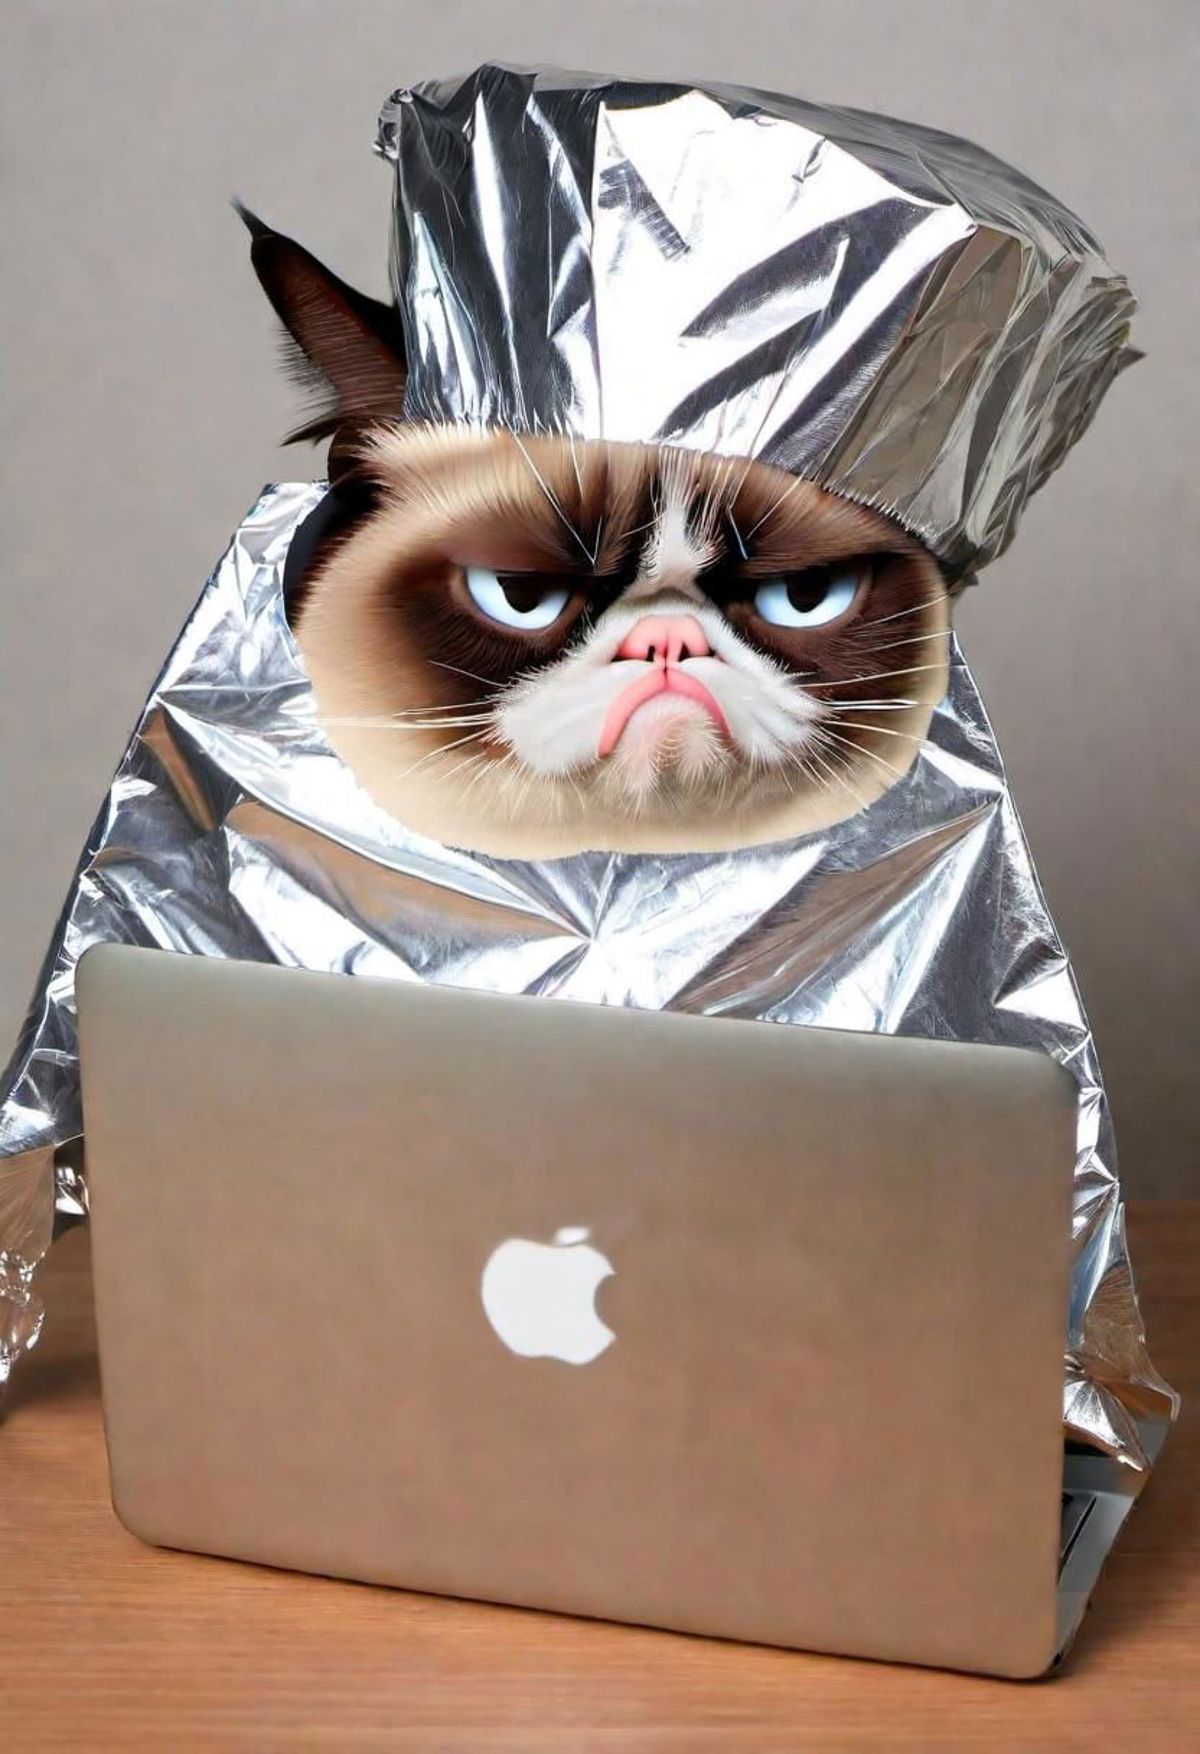 A Grumpy Cat in Aluminum Foil and a Laptop